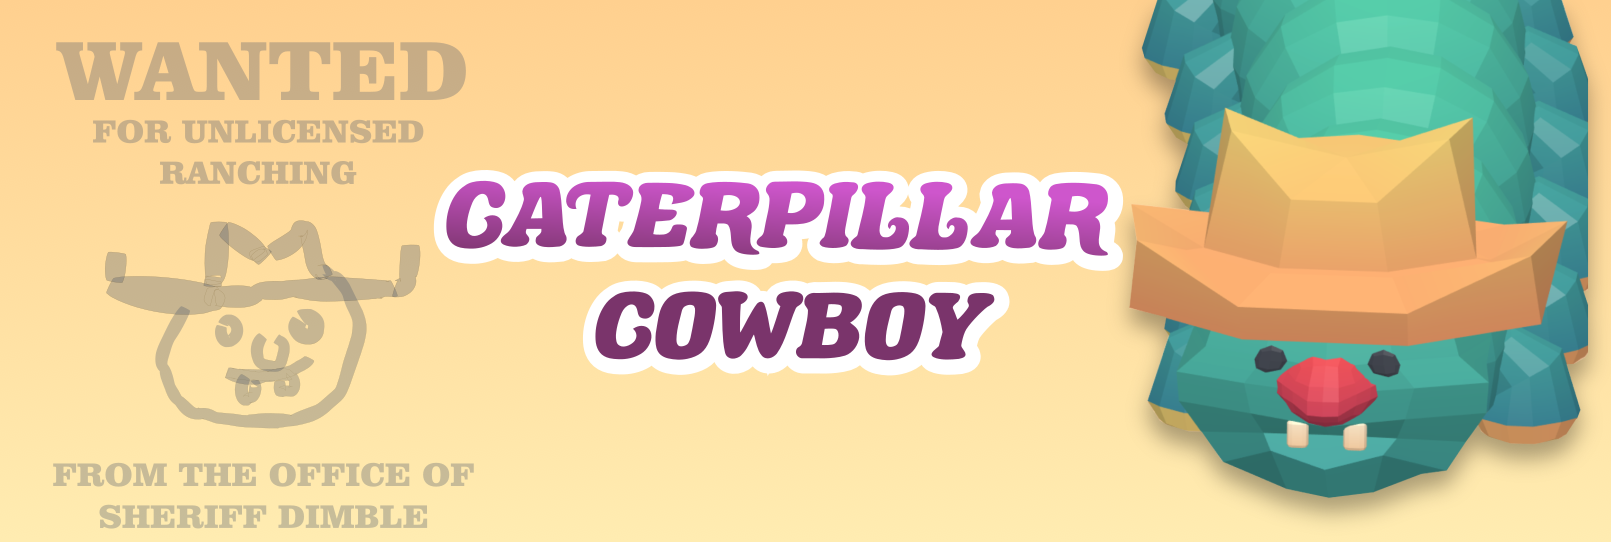 Caterpillar Cowboy